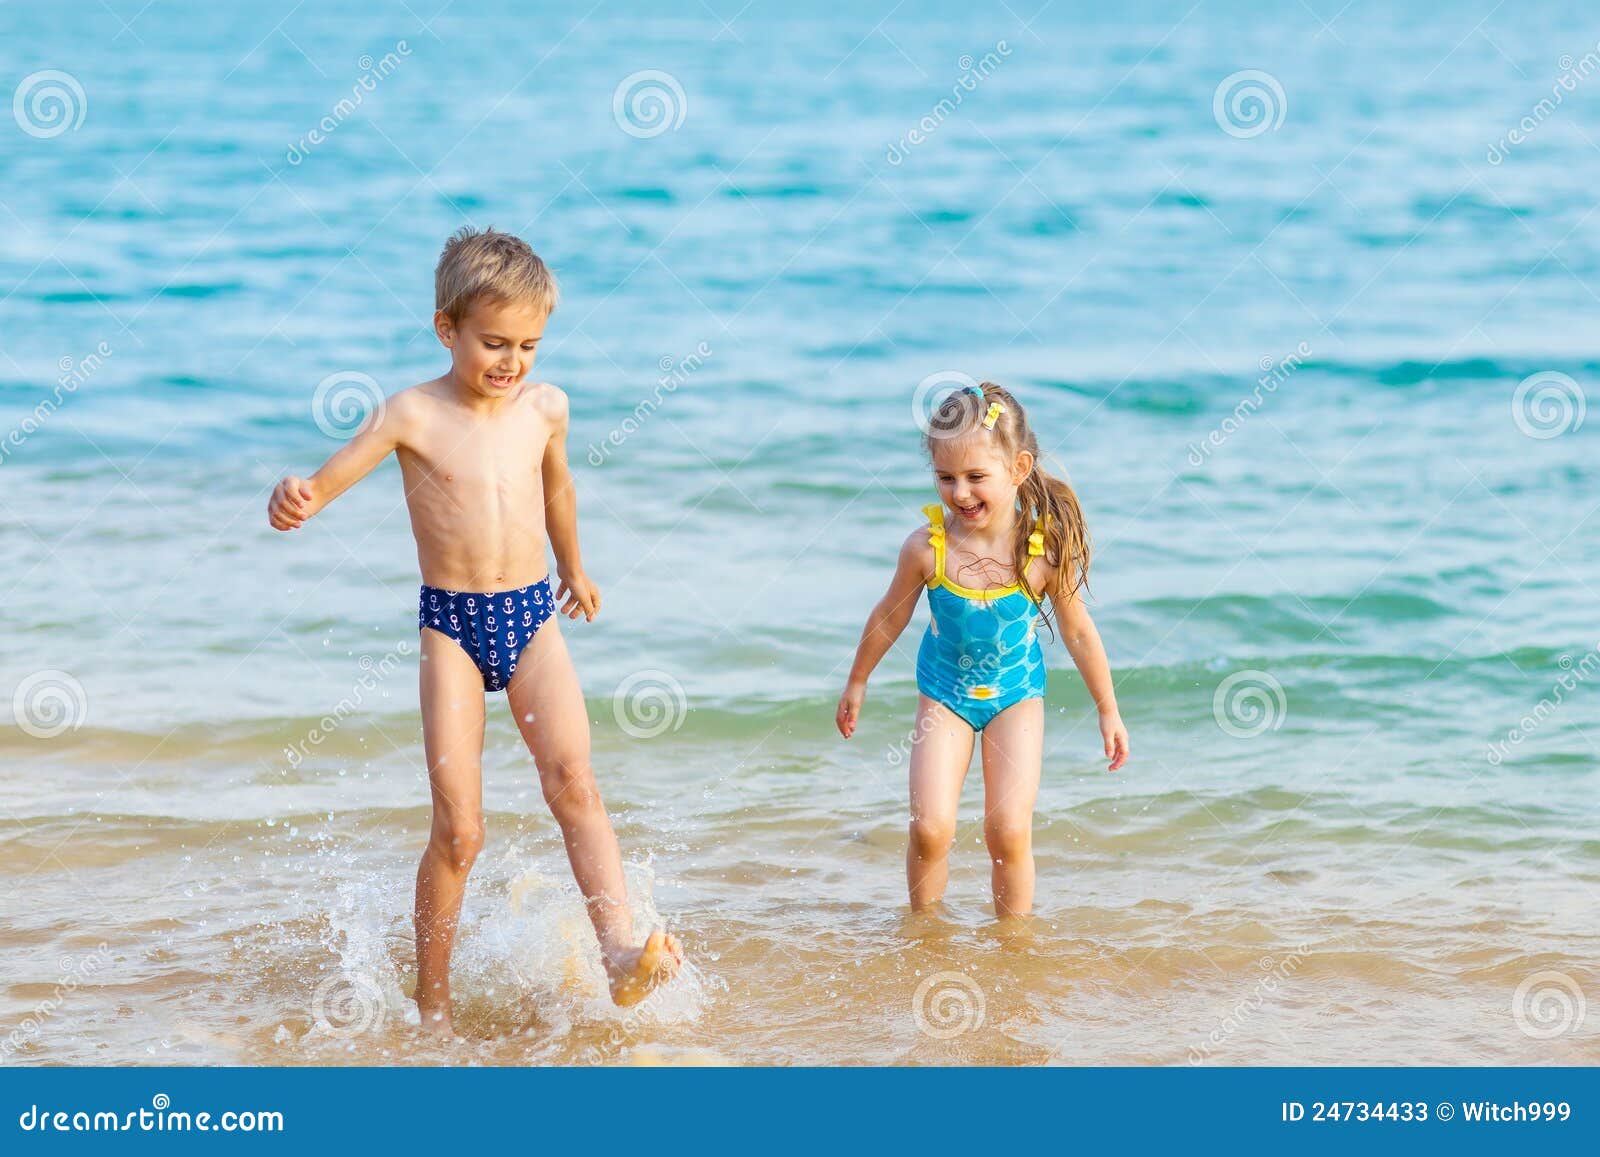 за голыми детьми на пляже фото 4